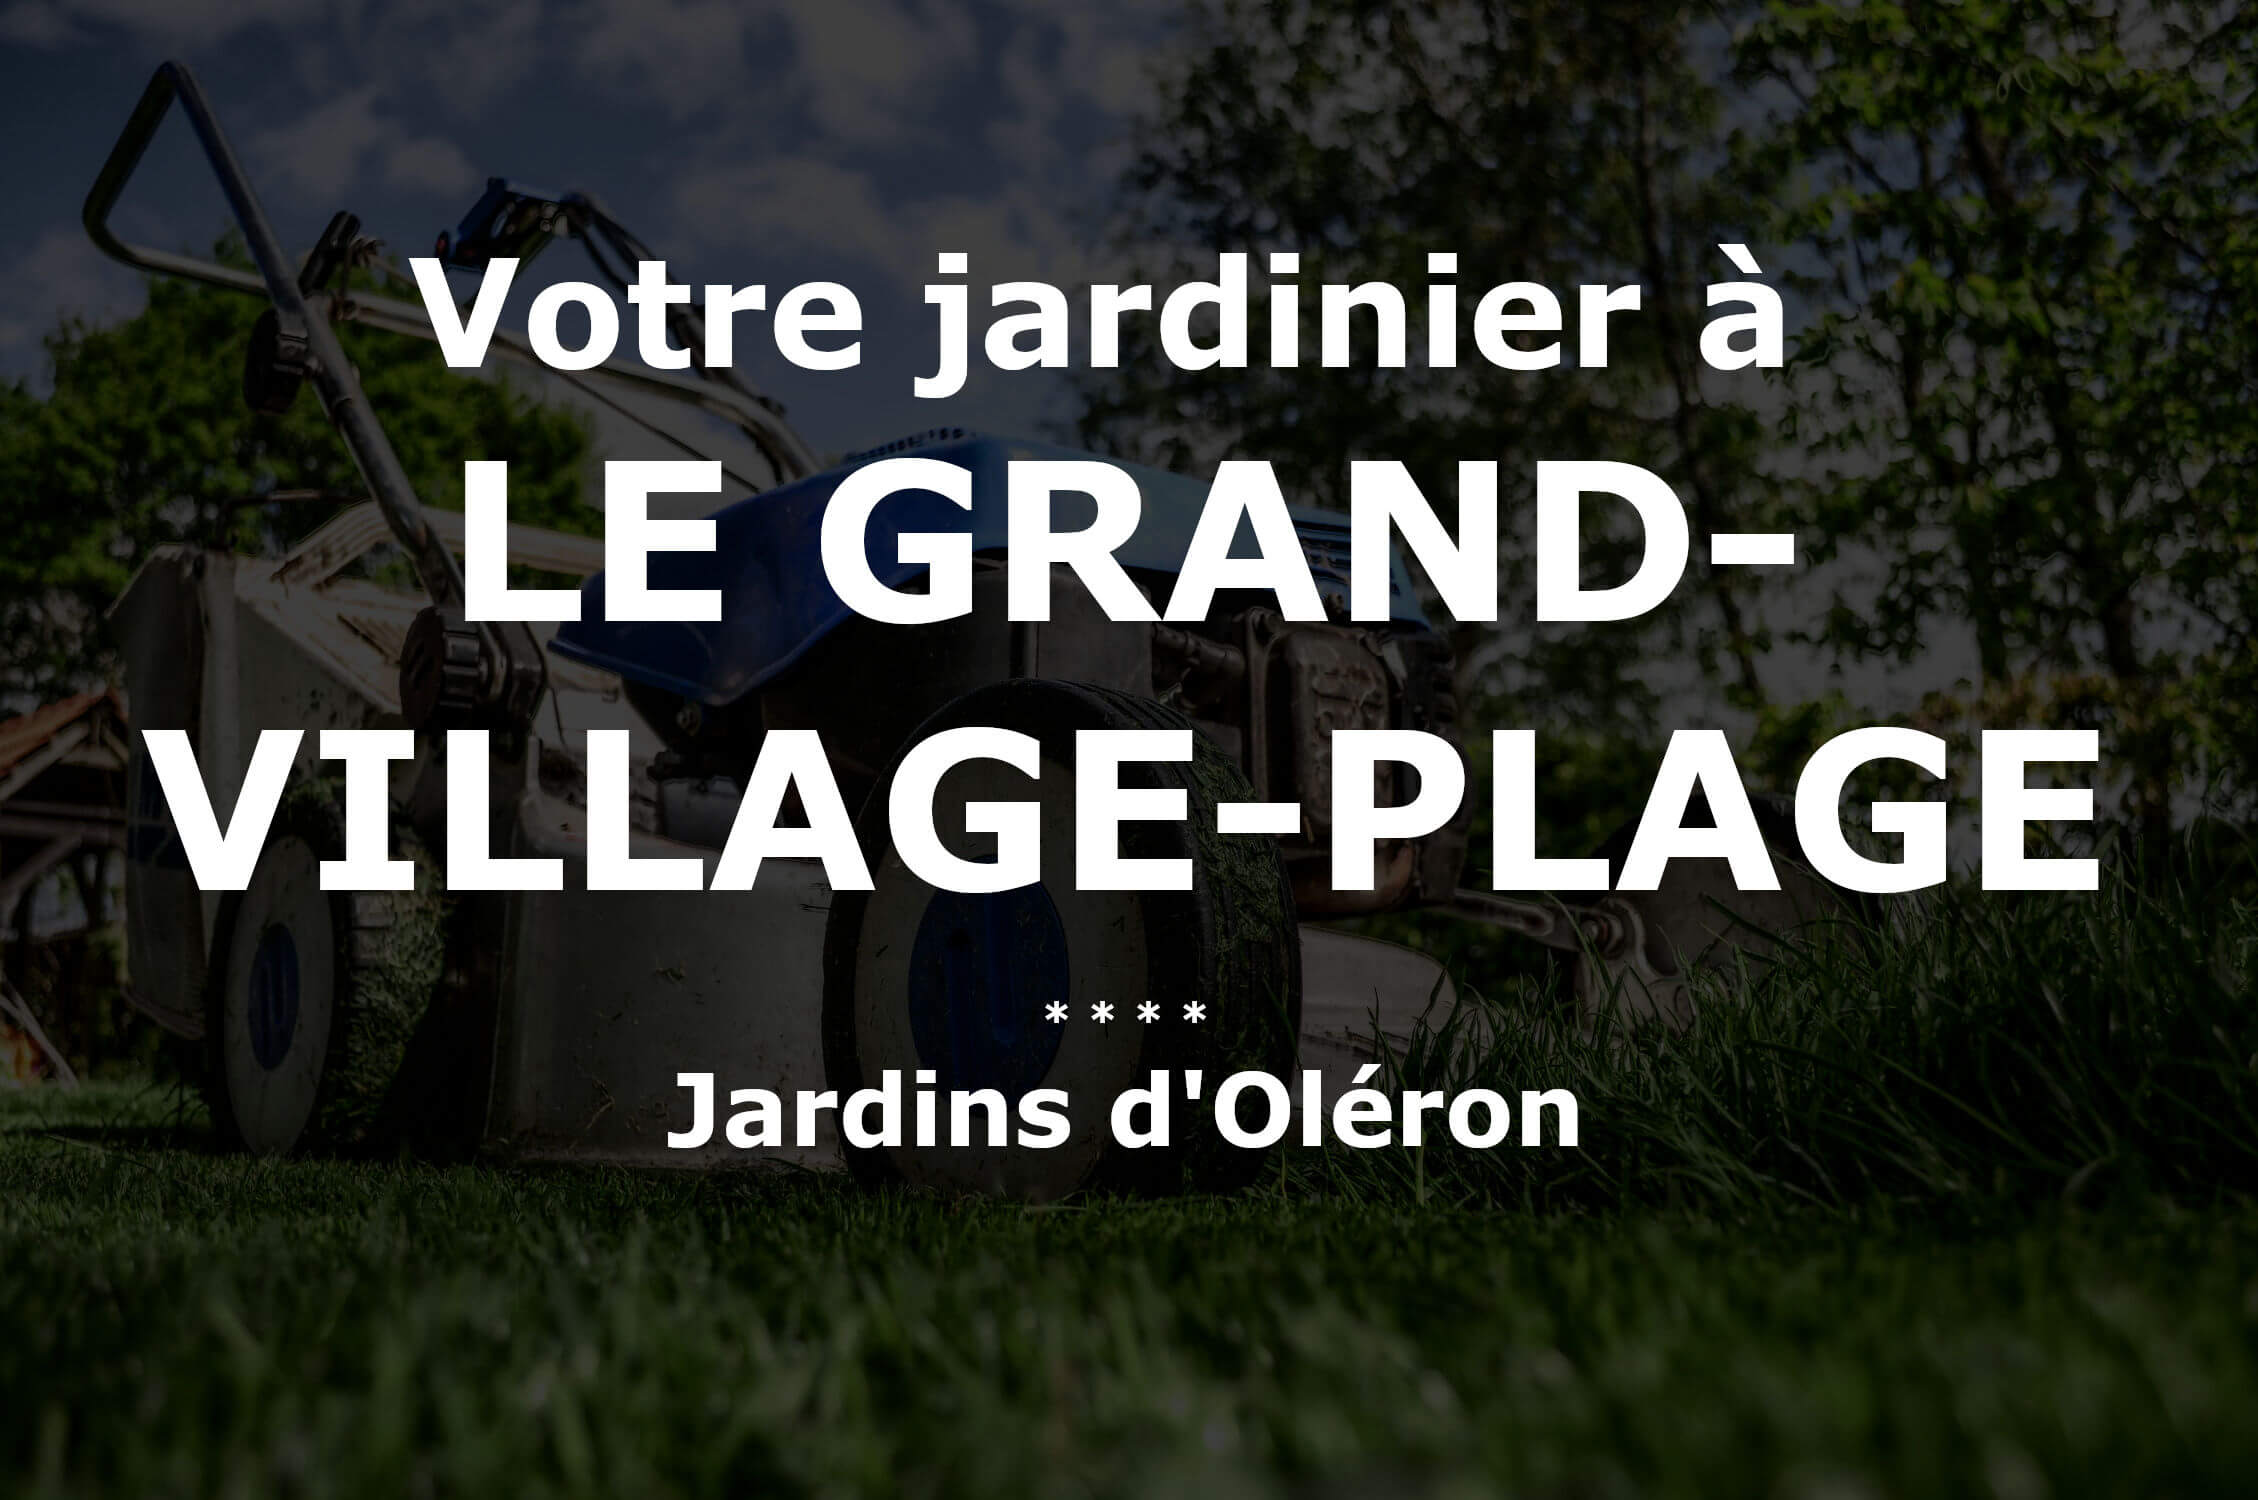 Jardinier Le Grand-Village-Plage